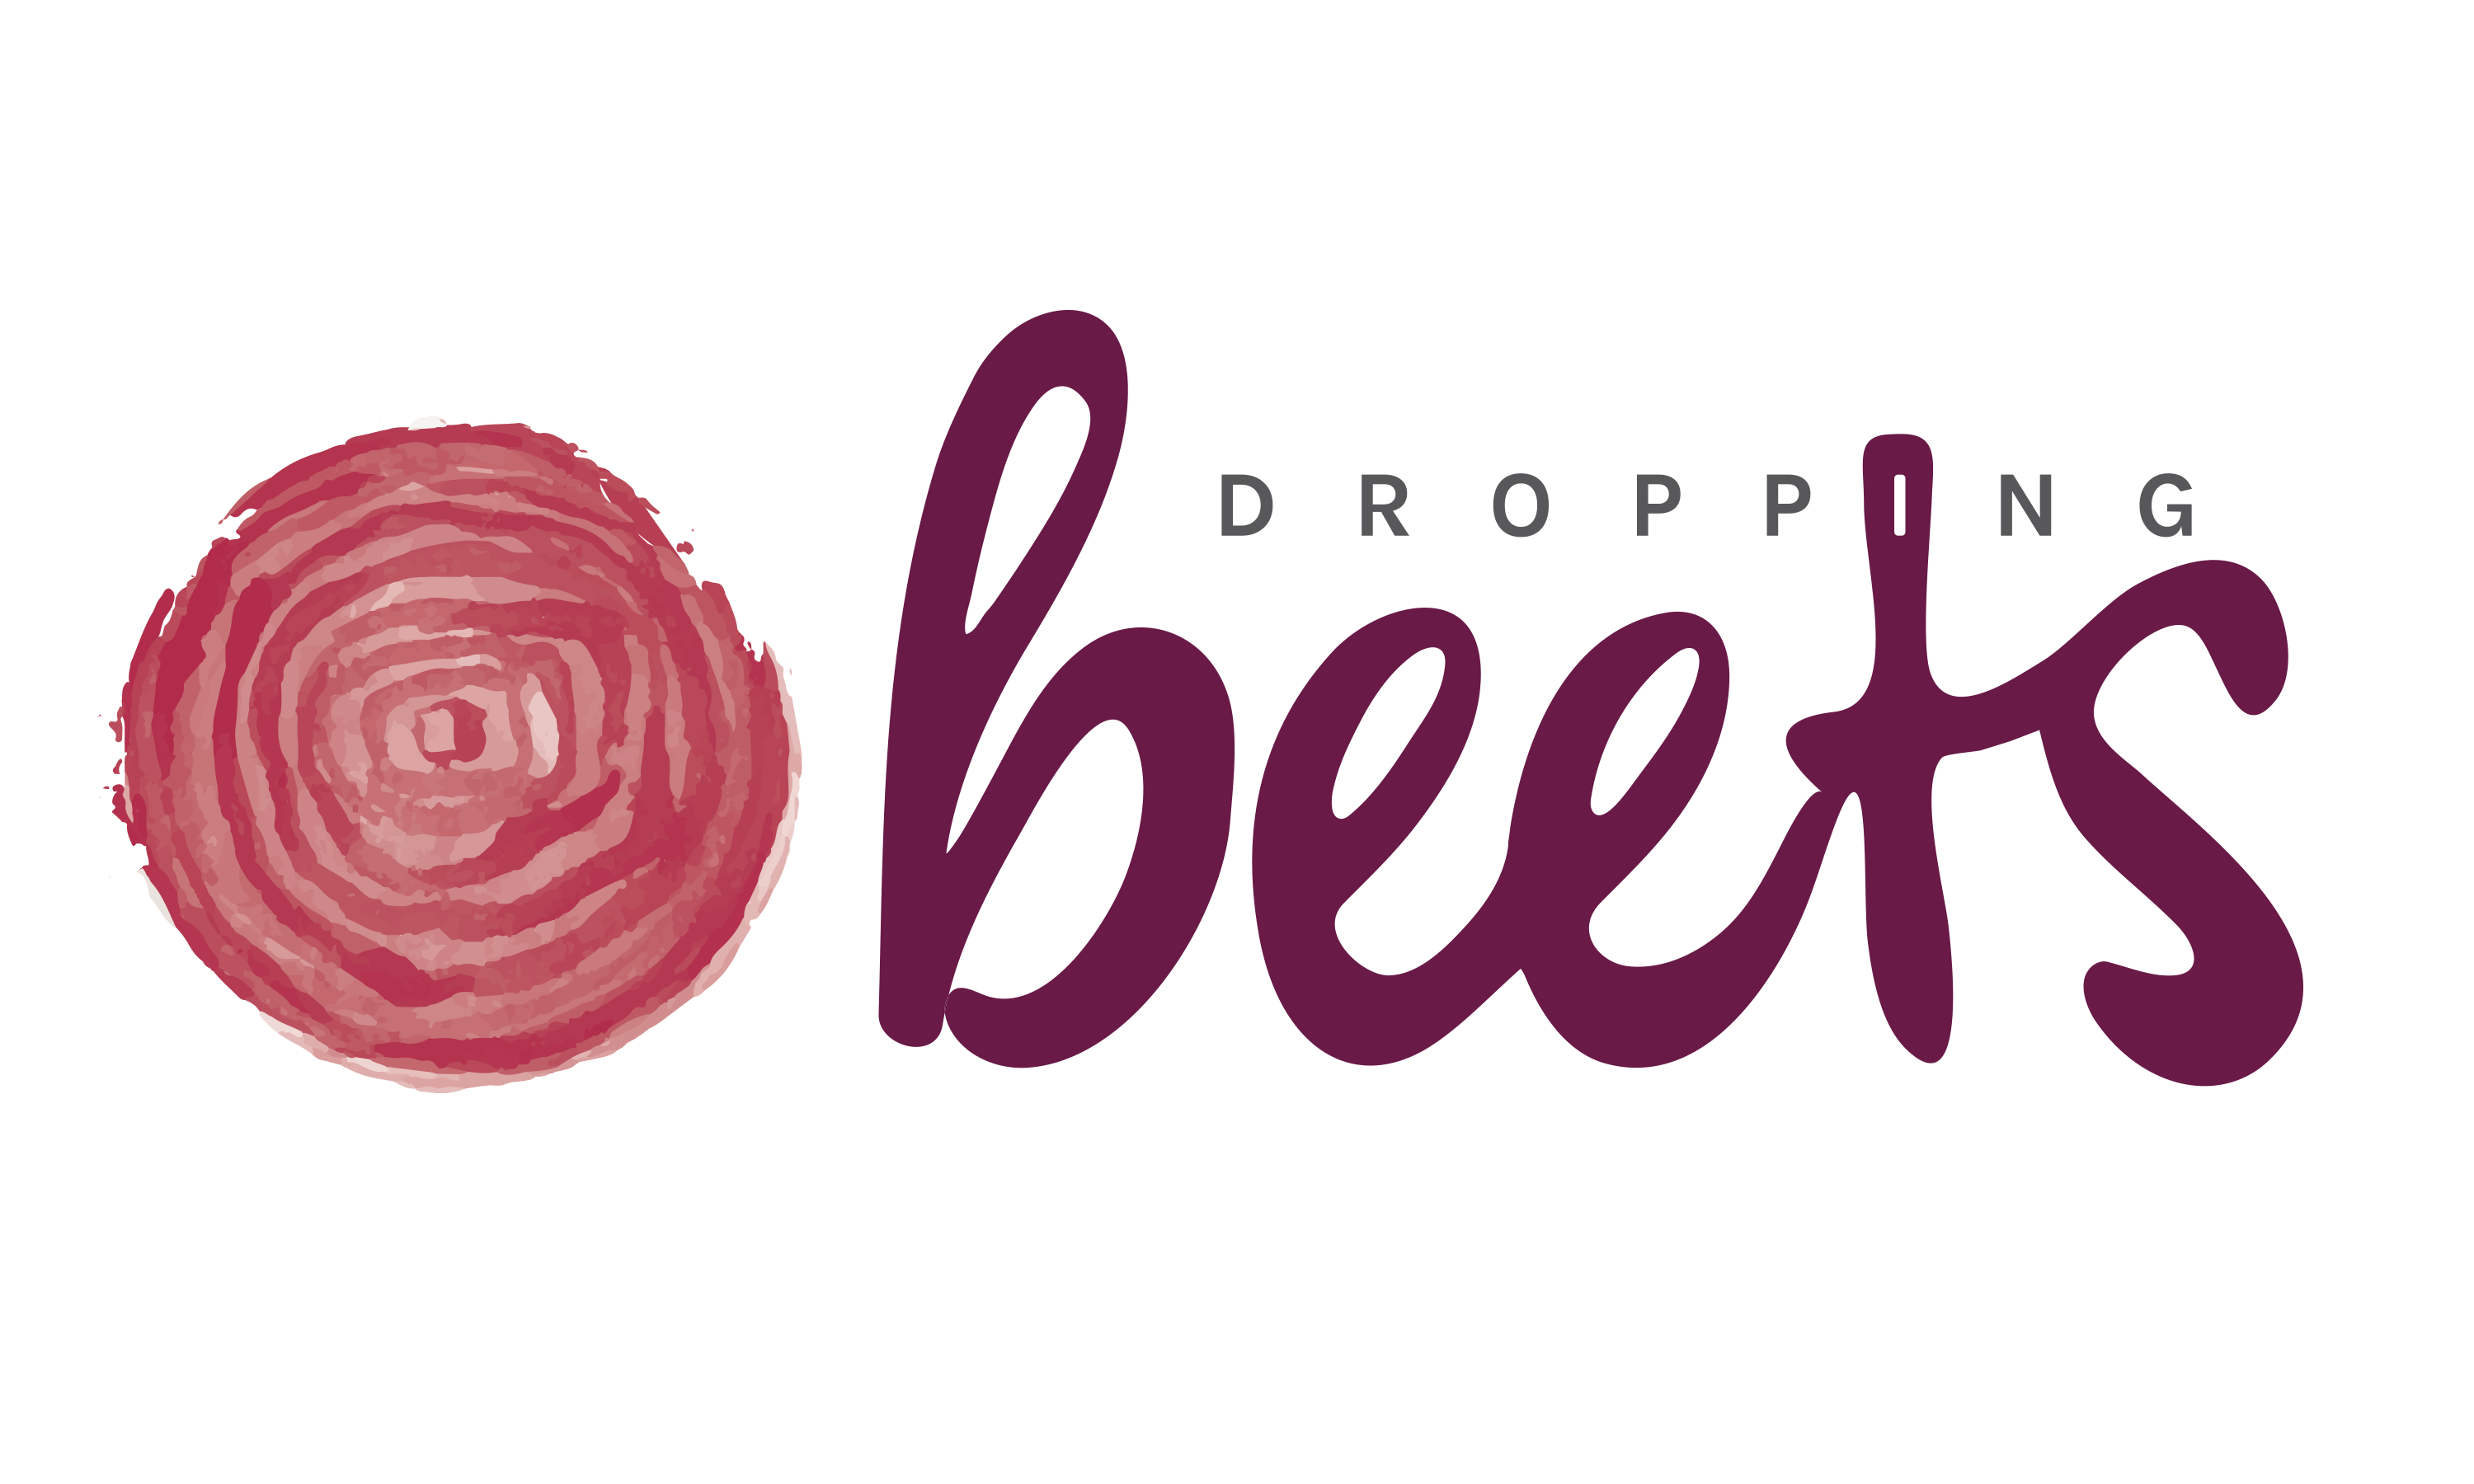 Beets Logo - Dropping Beets